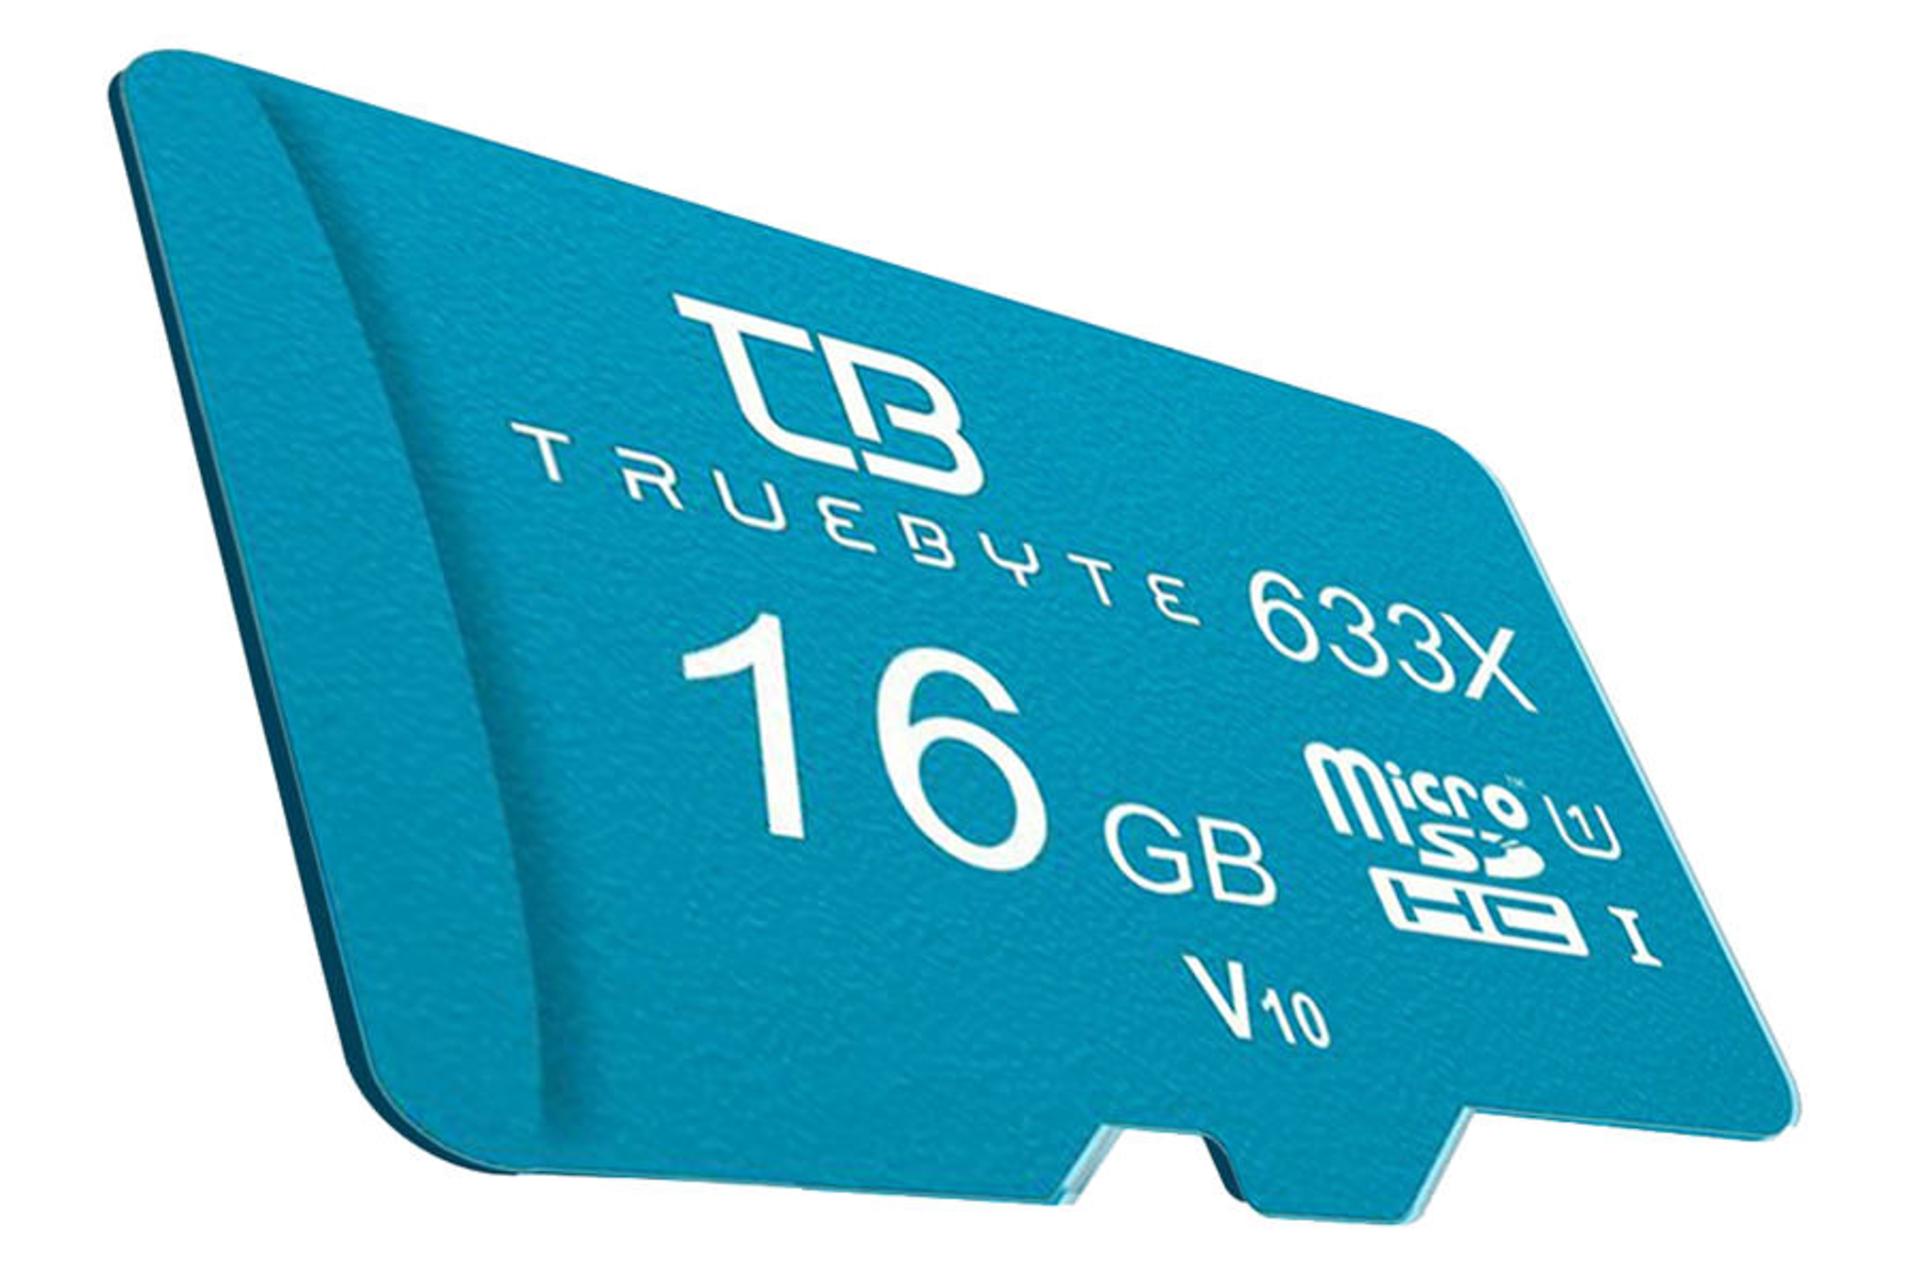 نمای جانبی کارت حافظه تروبایت MicroSDHC ظرفیت 16 گیگابایت مدل 633X MicroSDHC V10